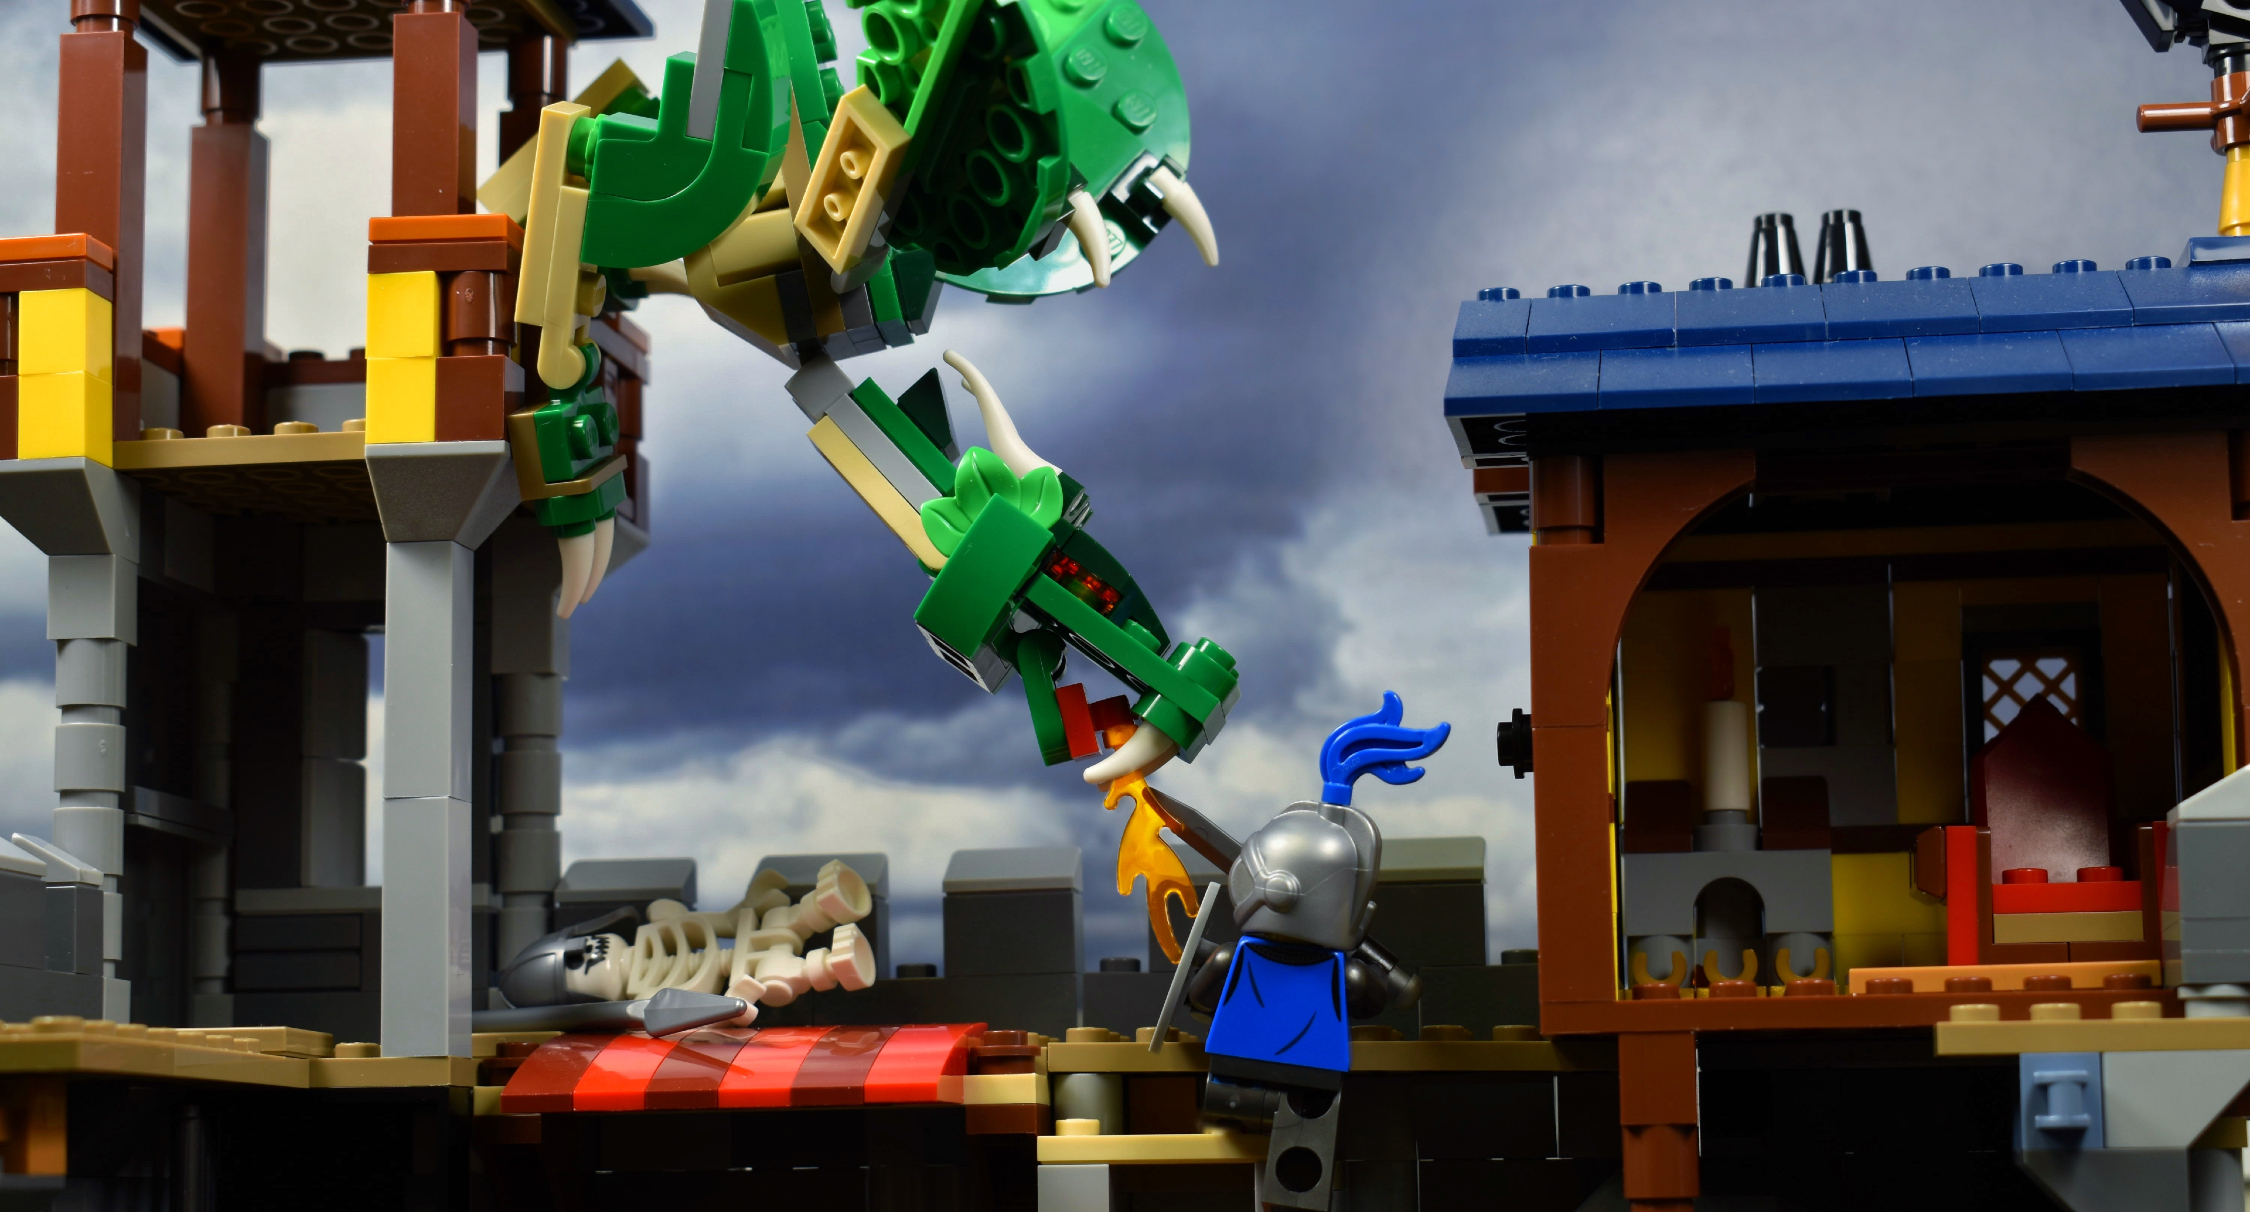 LEGO brick built dragon attacking a LEGO castle walls